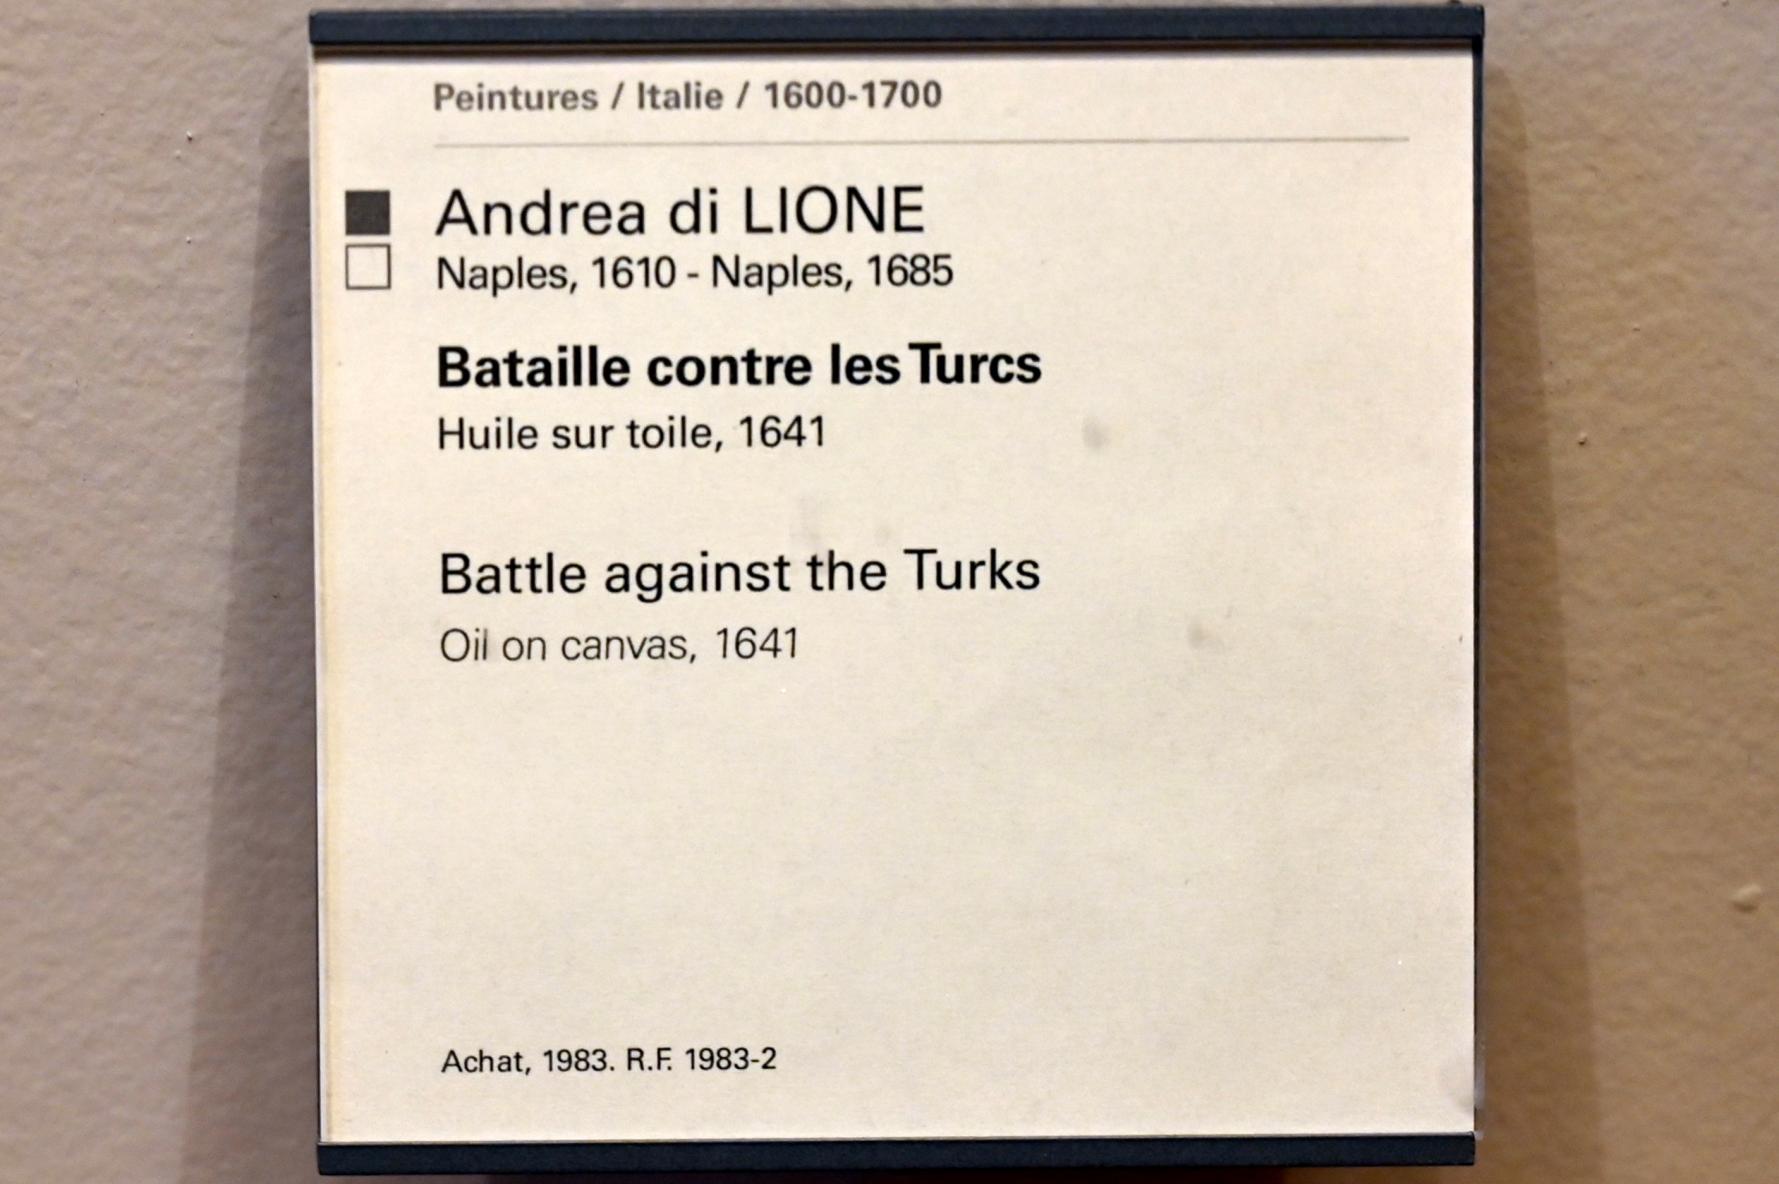 Andrea De Lione (1641), Schlacht gegen die Türken, Paris, Musée du Louvre, Saal 727, 1641, Bild 2/2